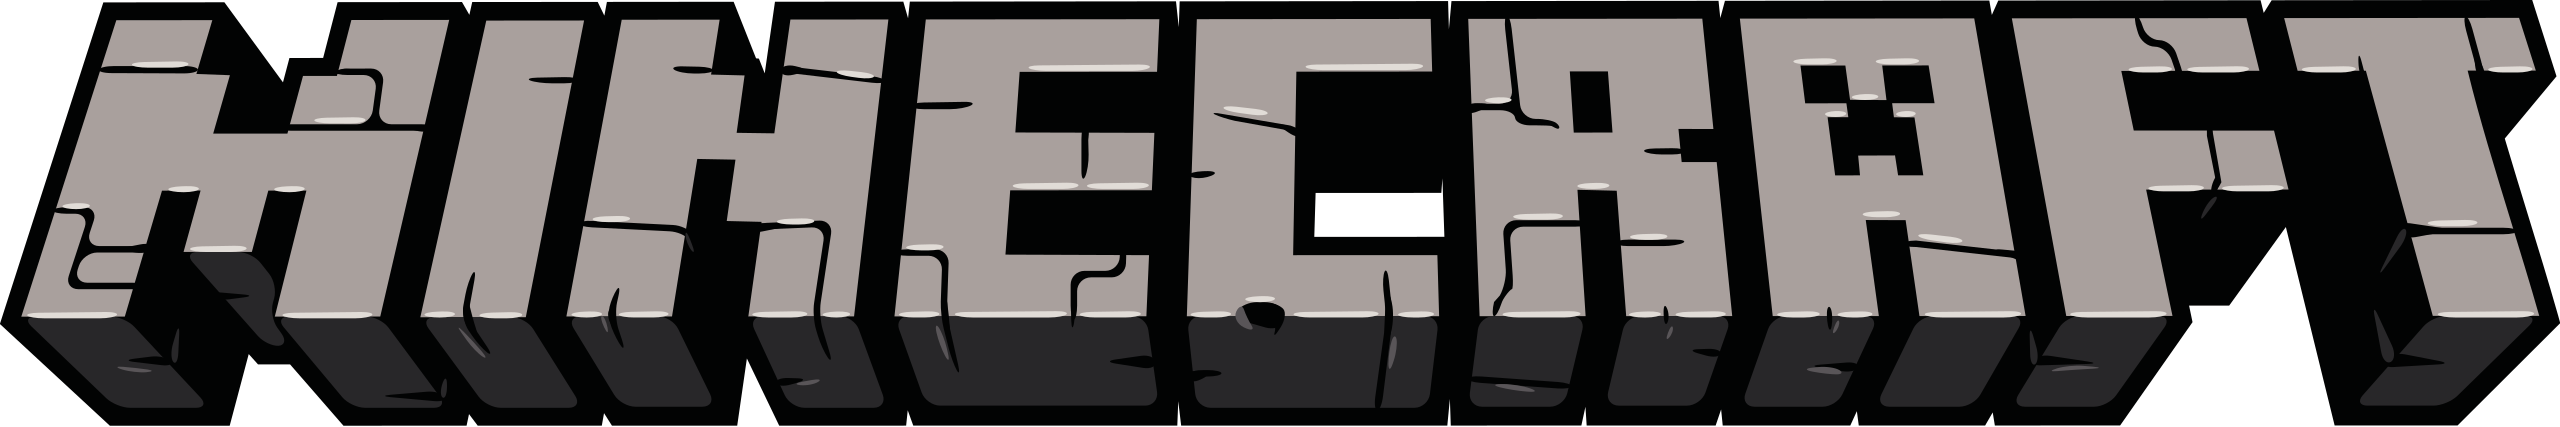 Logo du jeu vidéo Minecraft